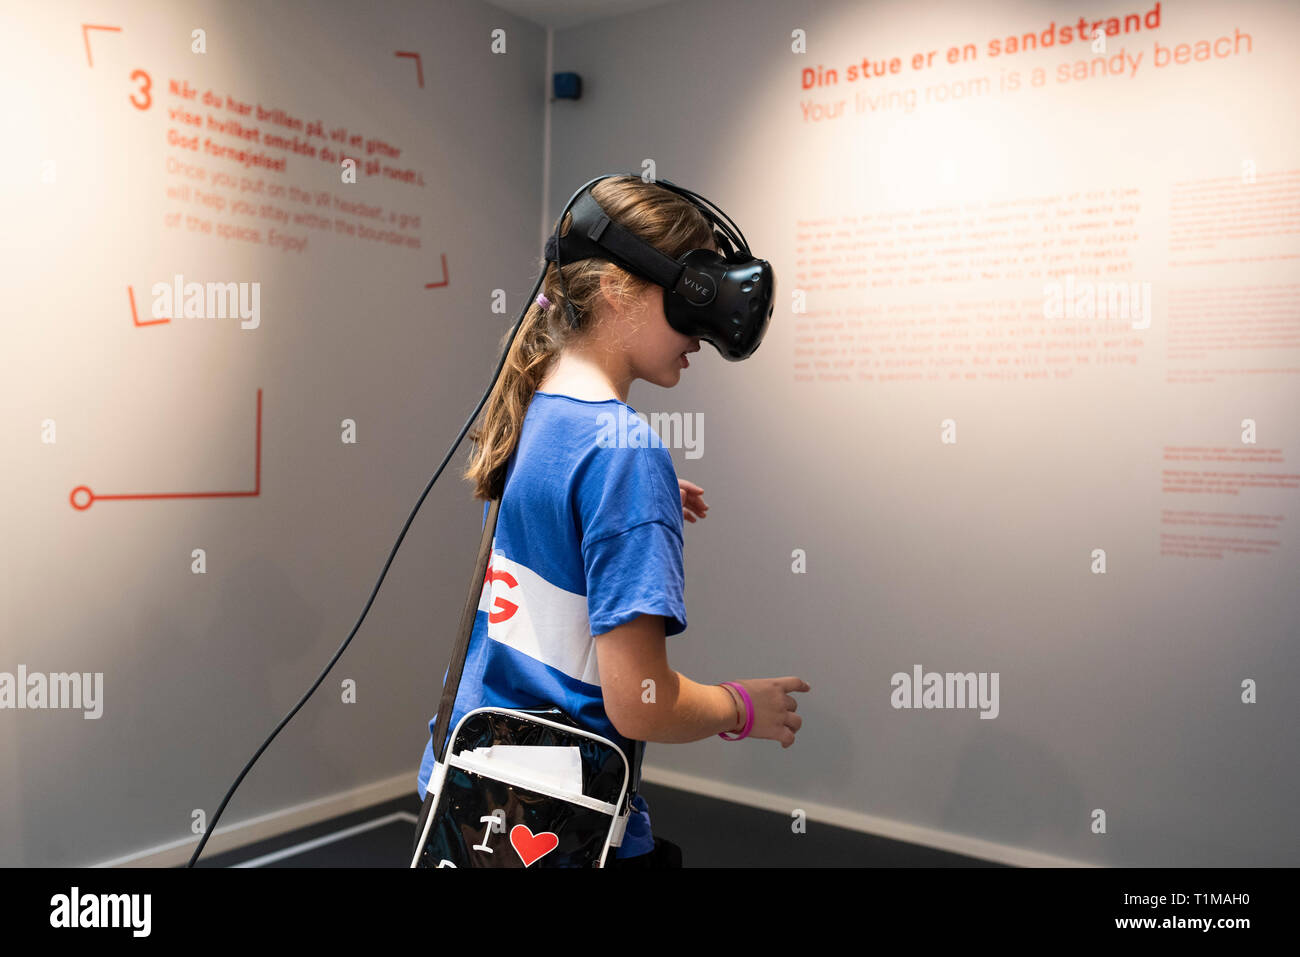 Copenhague. Le Danemark. Enfant à l'aide d'un VR (virtual reality) casque pour interagir avec une exposition à la Danish Architecture centre CAD, Bryghuspladsen 10. Banque D'Images